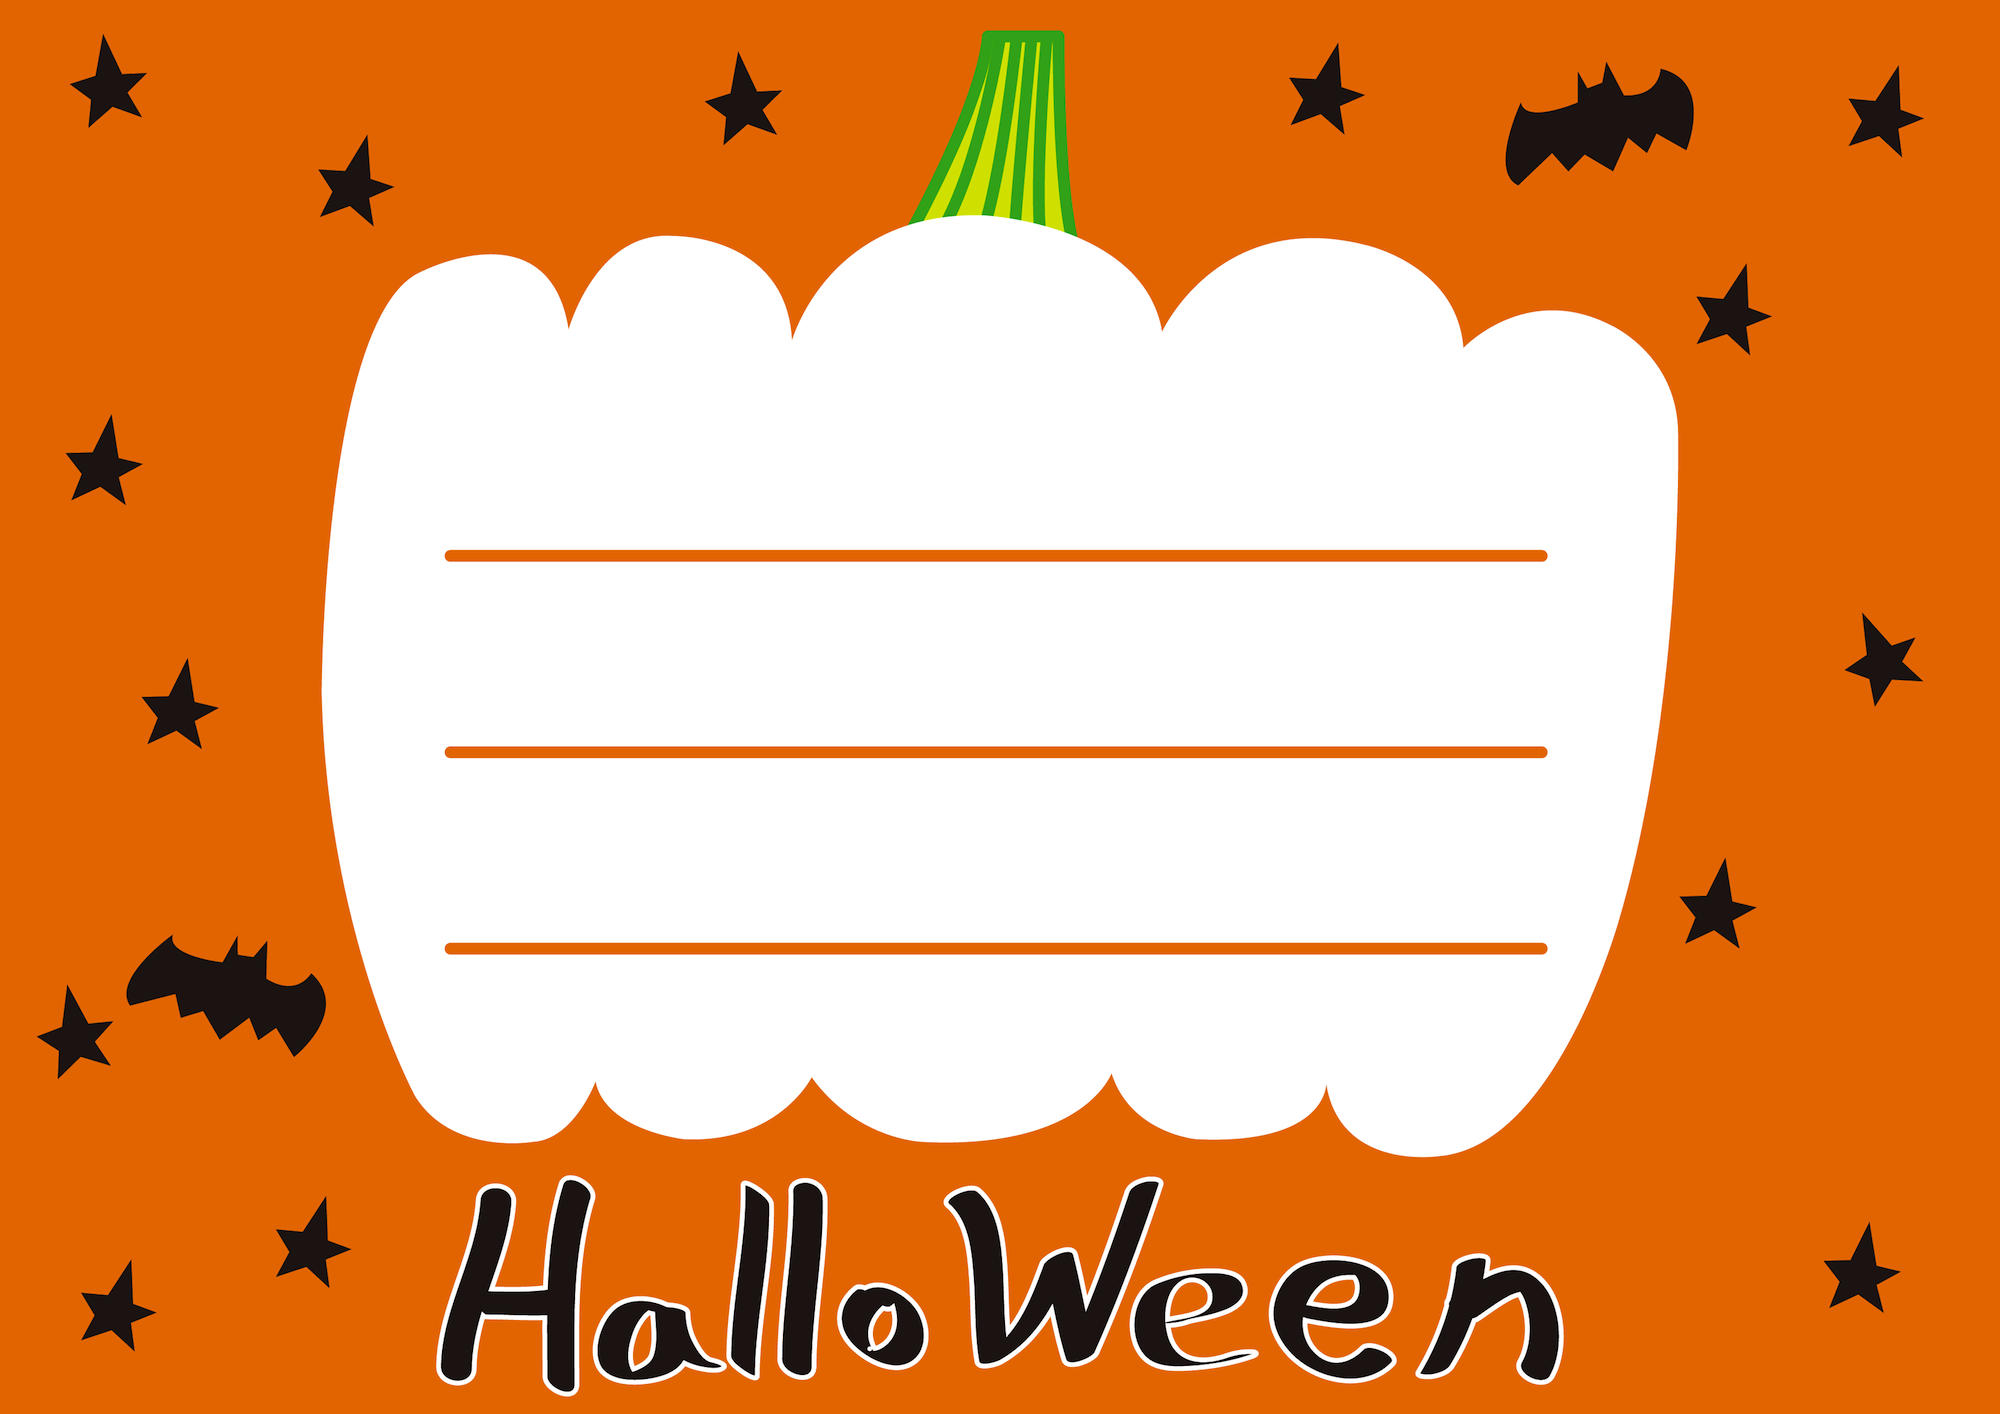 Halloweenハロウィンお化けかぼちゃ枠メッセージカードイラスト 無料イラスト フリー素材屋きんぎょ